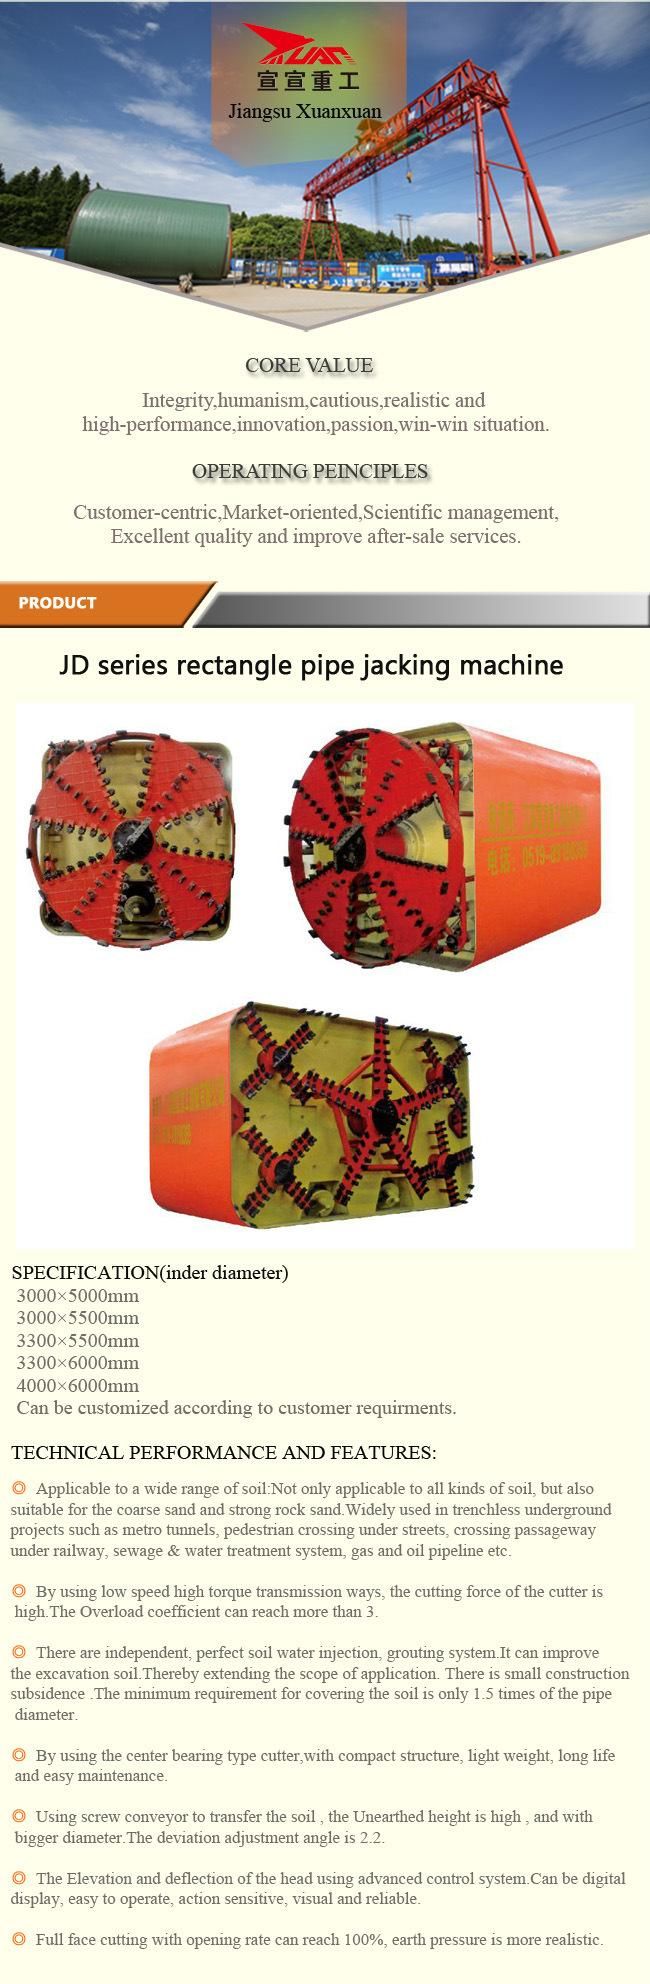 4000*6000mm Trenchless/Underground Rectangular Pipe Jacking Machine